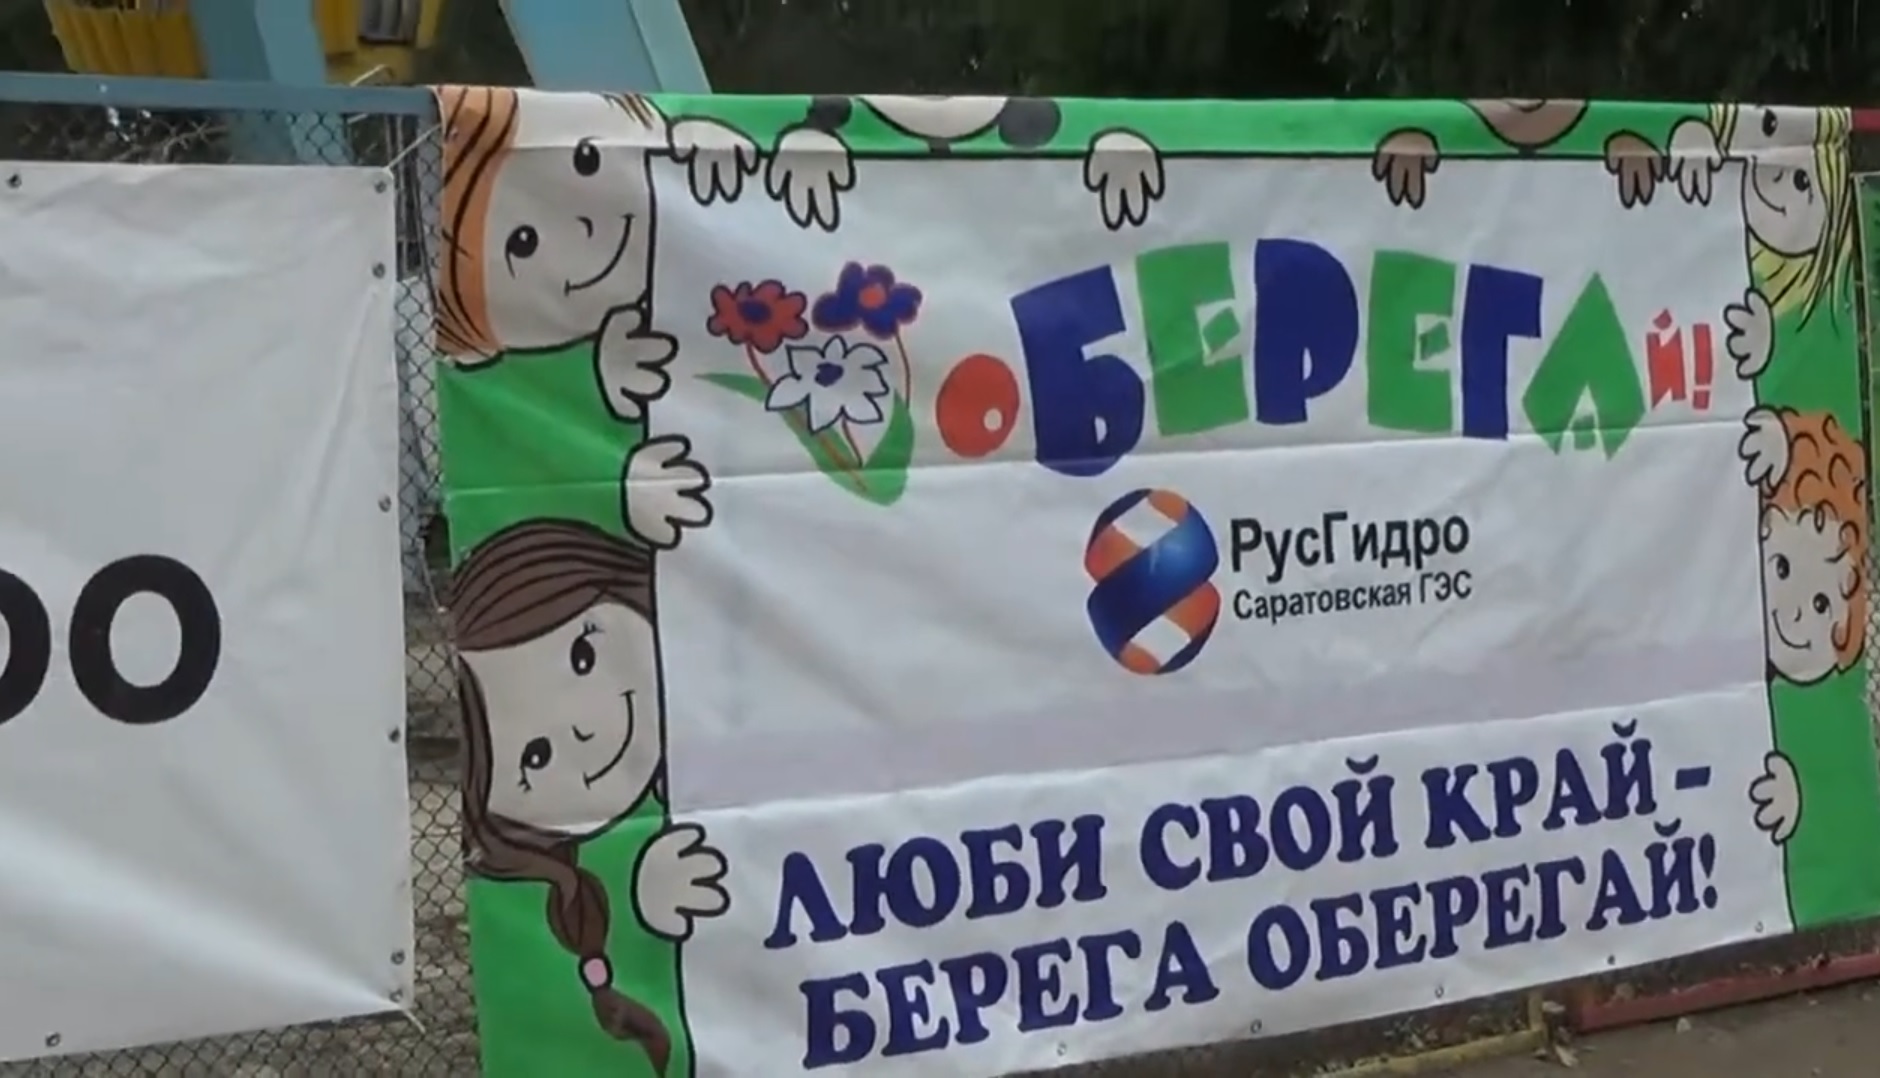 11-12 сентября 2015 года в городе Балаково в девятый раз состоялась масштабная экологическая акция «оБЕРЕГАй», посвящённая Дню города.